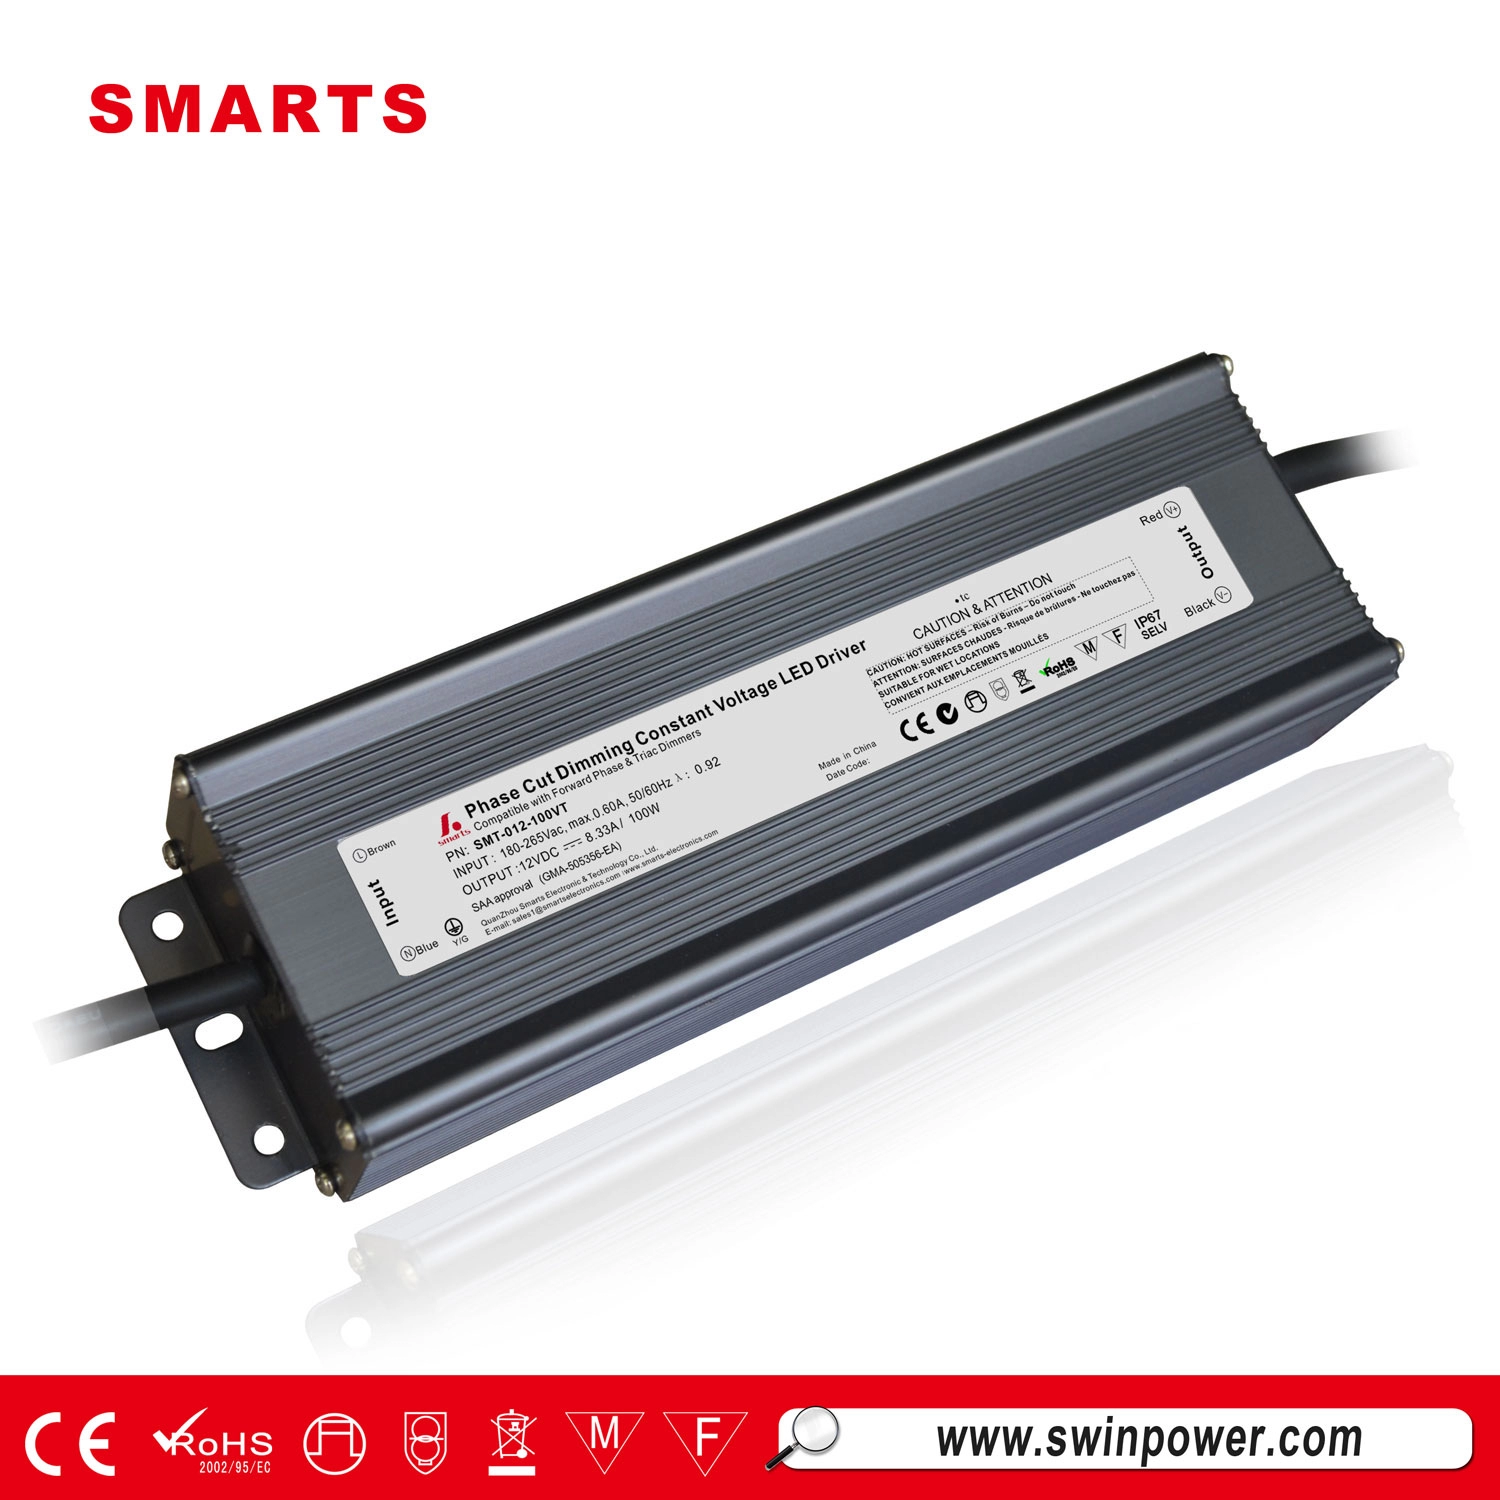 12-V-Netzteil 100-W-Konstantspannungs-LED-Treiber-Triac-Stromquelle für LED-Streifenlichter